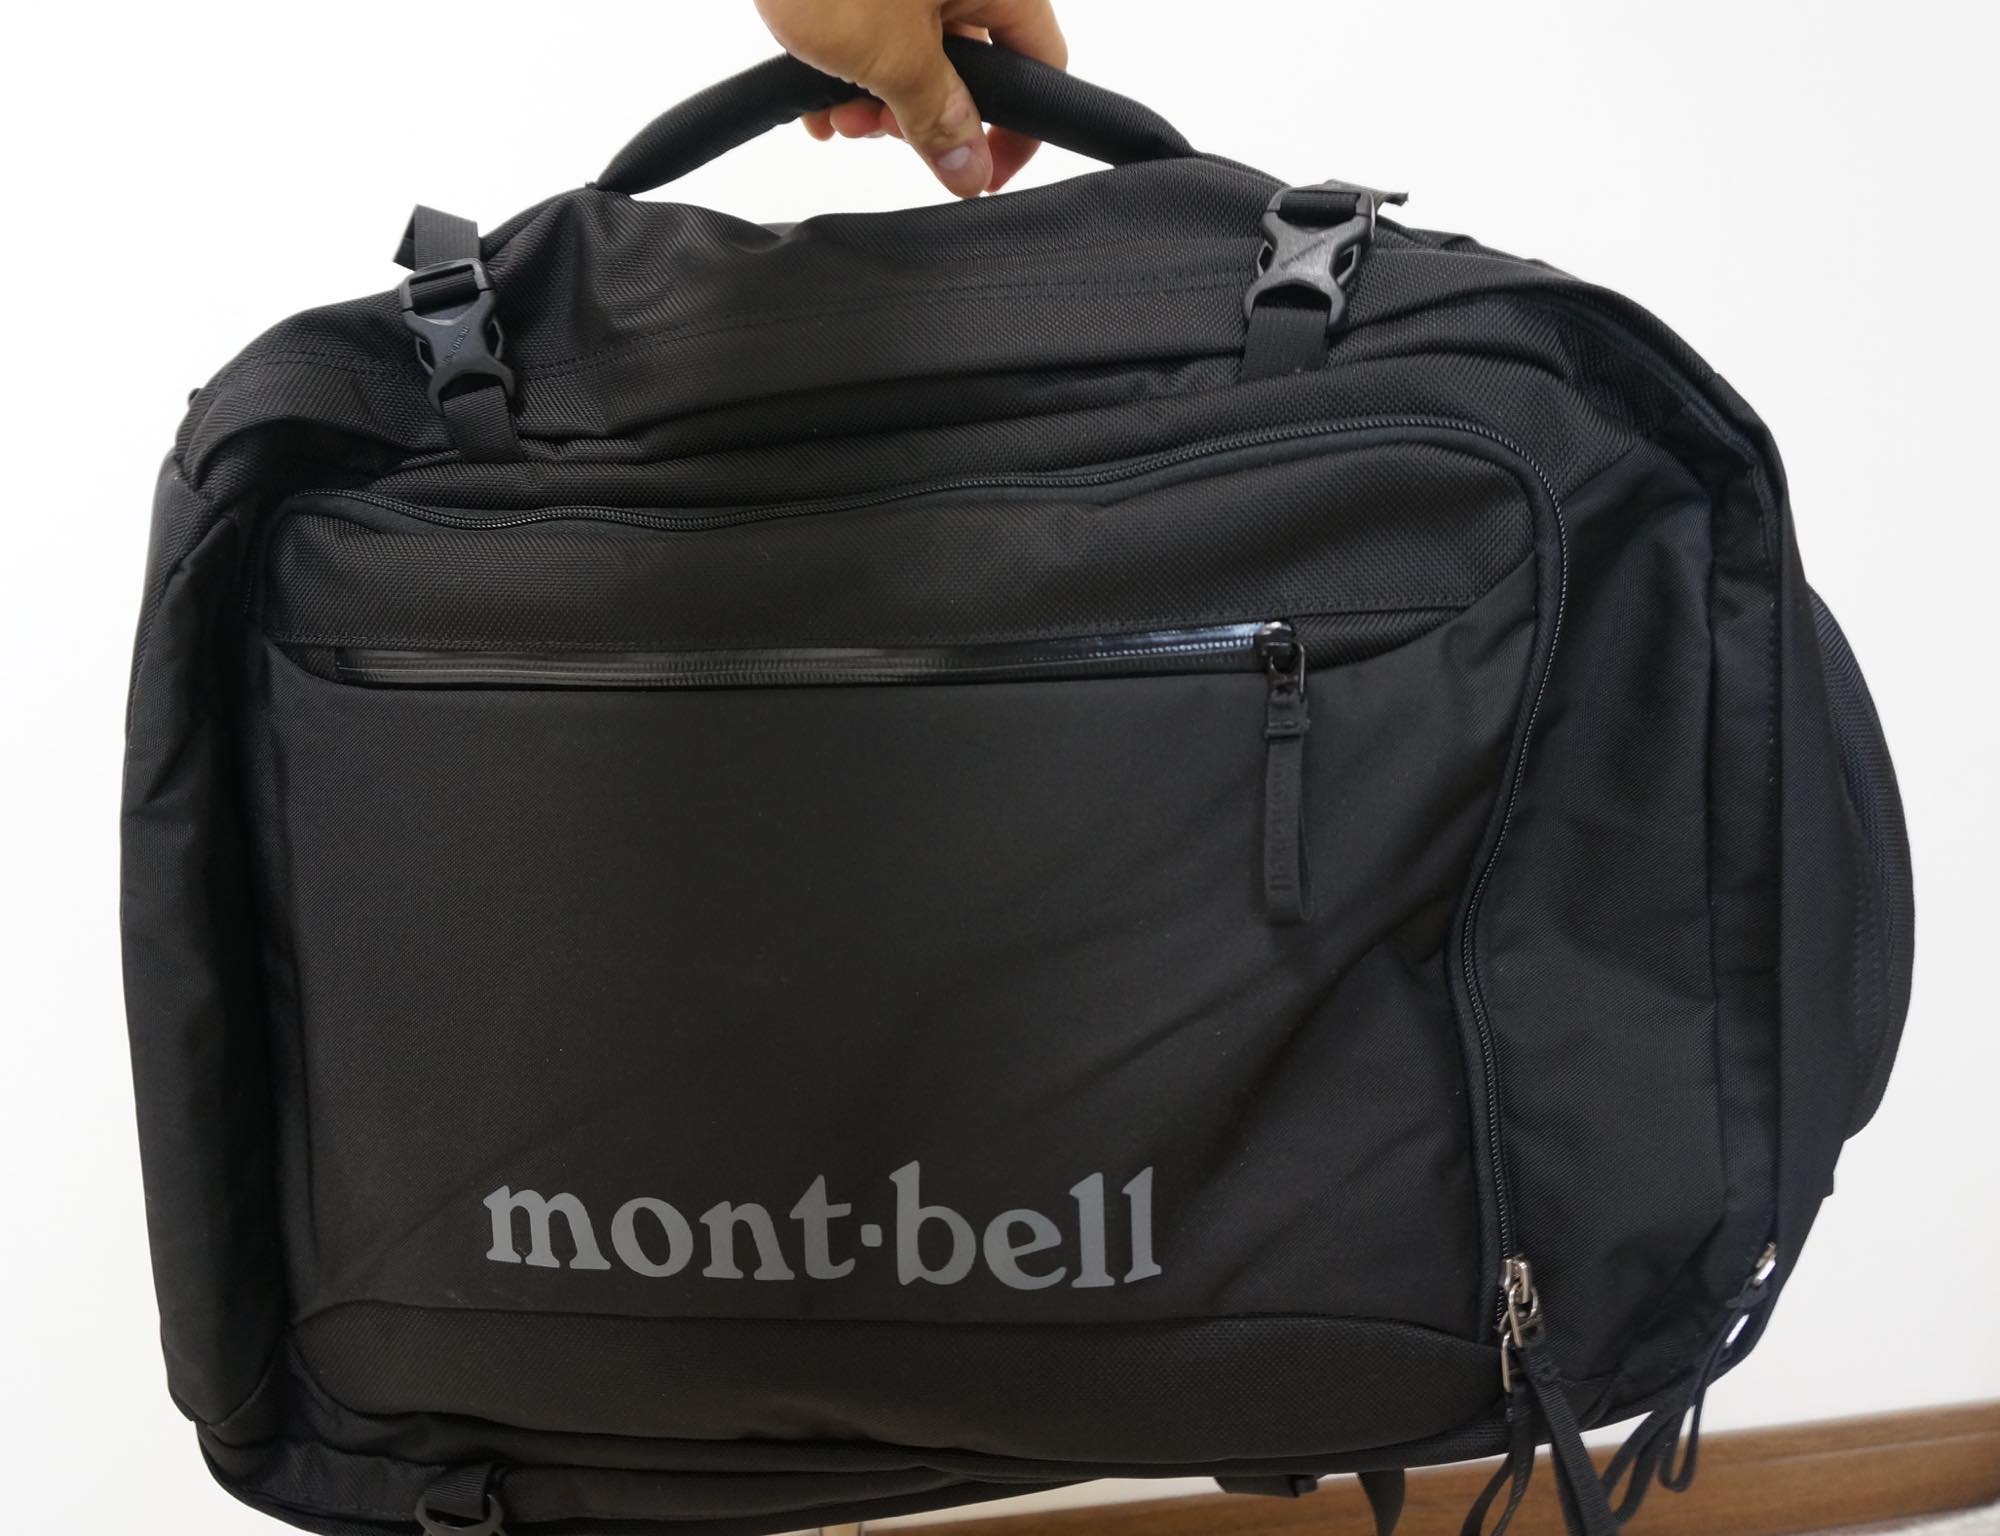 モンベル トライパック45 mont-bell